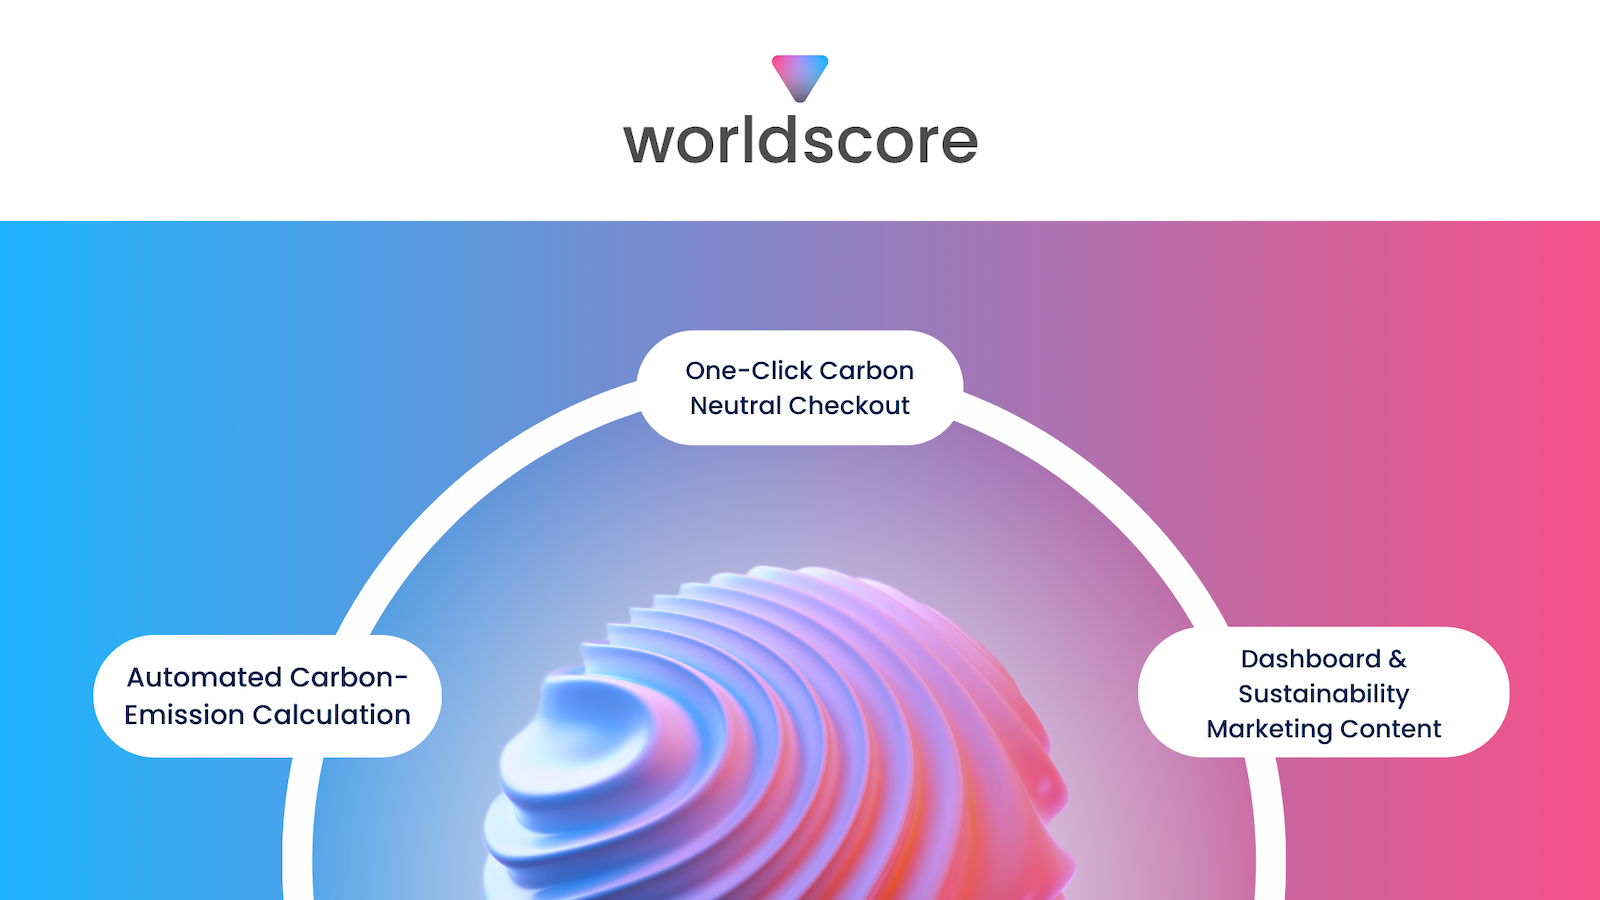 worldscore logo在描述功能的波浪球体上方